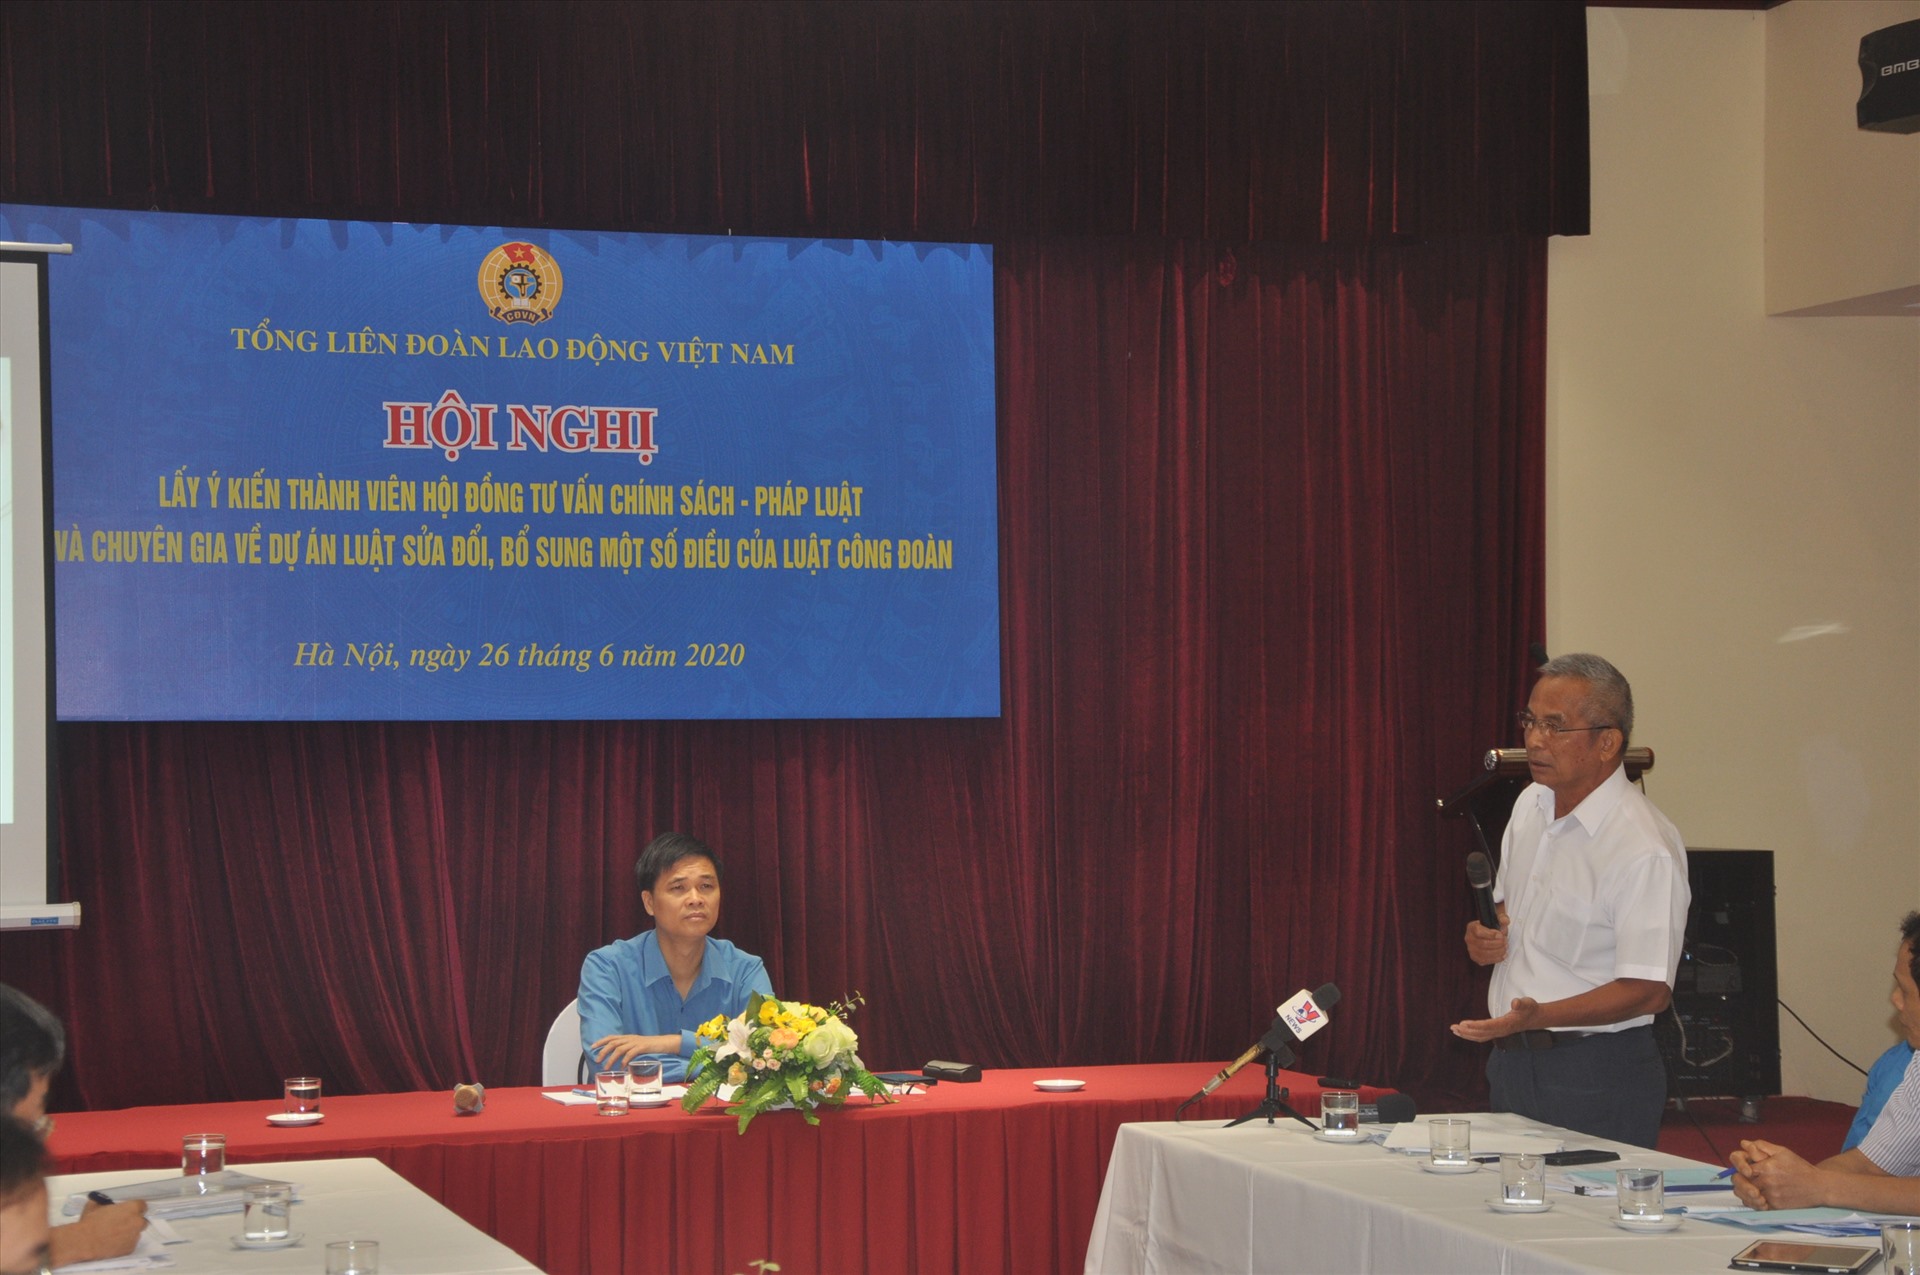 Nguyên Chủ tịch Tổng Liên đoàn Lao động Việt Nam Đặng Ngọc Tùng phát biểu tại Hội nghị lấy ý kiến về dự án Luật sửa đổi, bổ sung một số điều của Luật Công đoàn vừa được Tổng LĐLĐVN tổ chức. Ảnh: Bảo Hân.